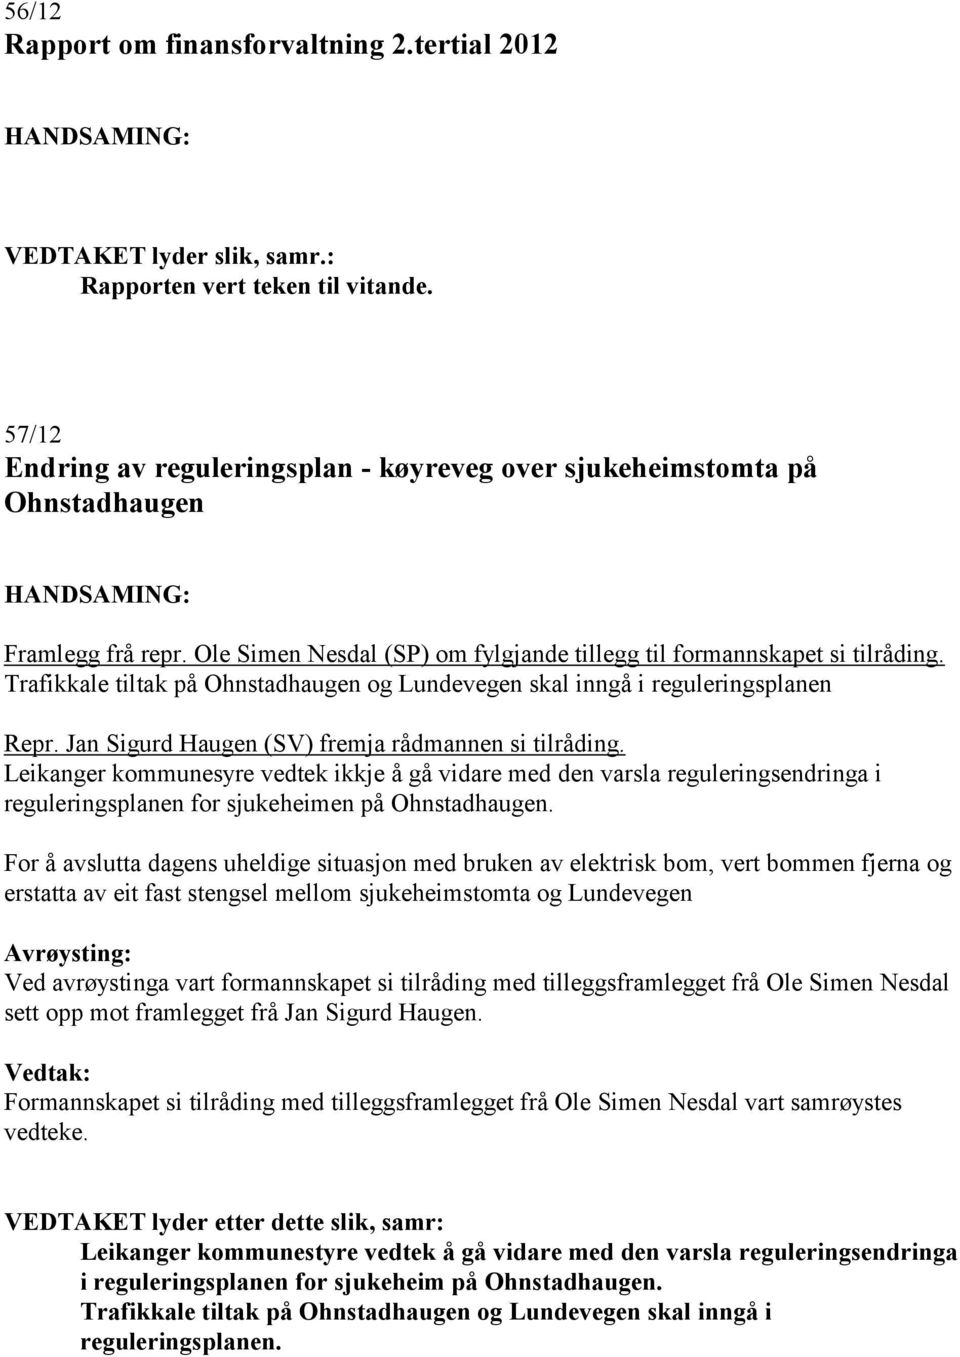 Jan Sigurd Haugen (SV) fremja rådmannen si tilråding. Leikanger kommunesyre vedtek ikkje å gå vidare med den varsla reguleringsendringa i reguleringsplanen for sjukeheimen på Ohnstadhaugen.